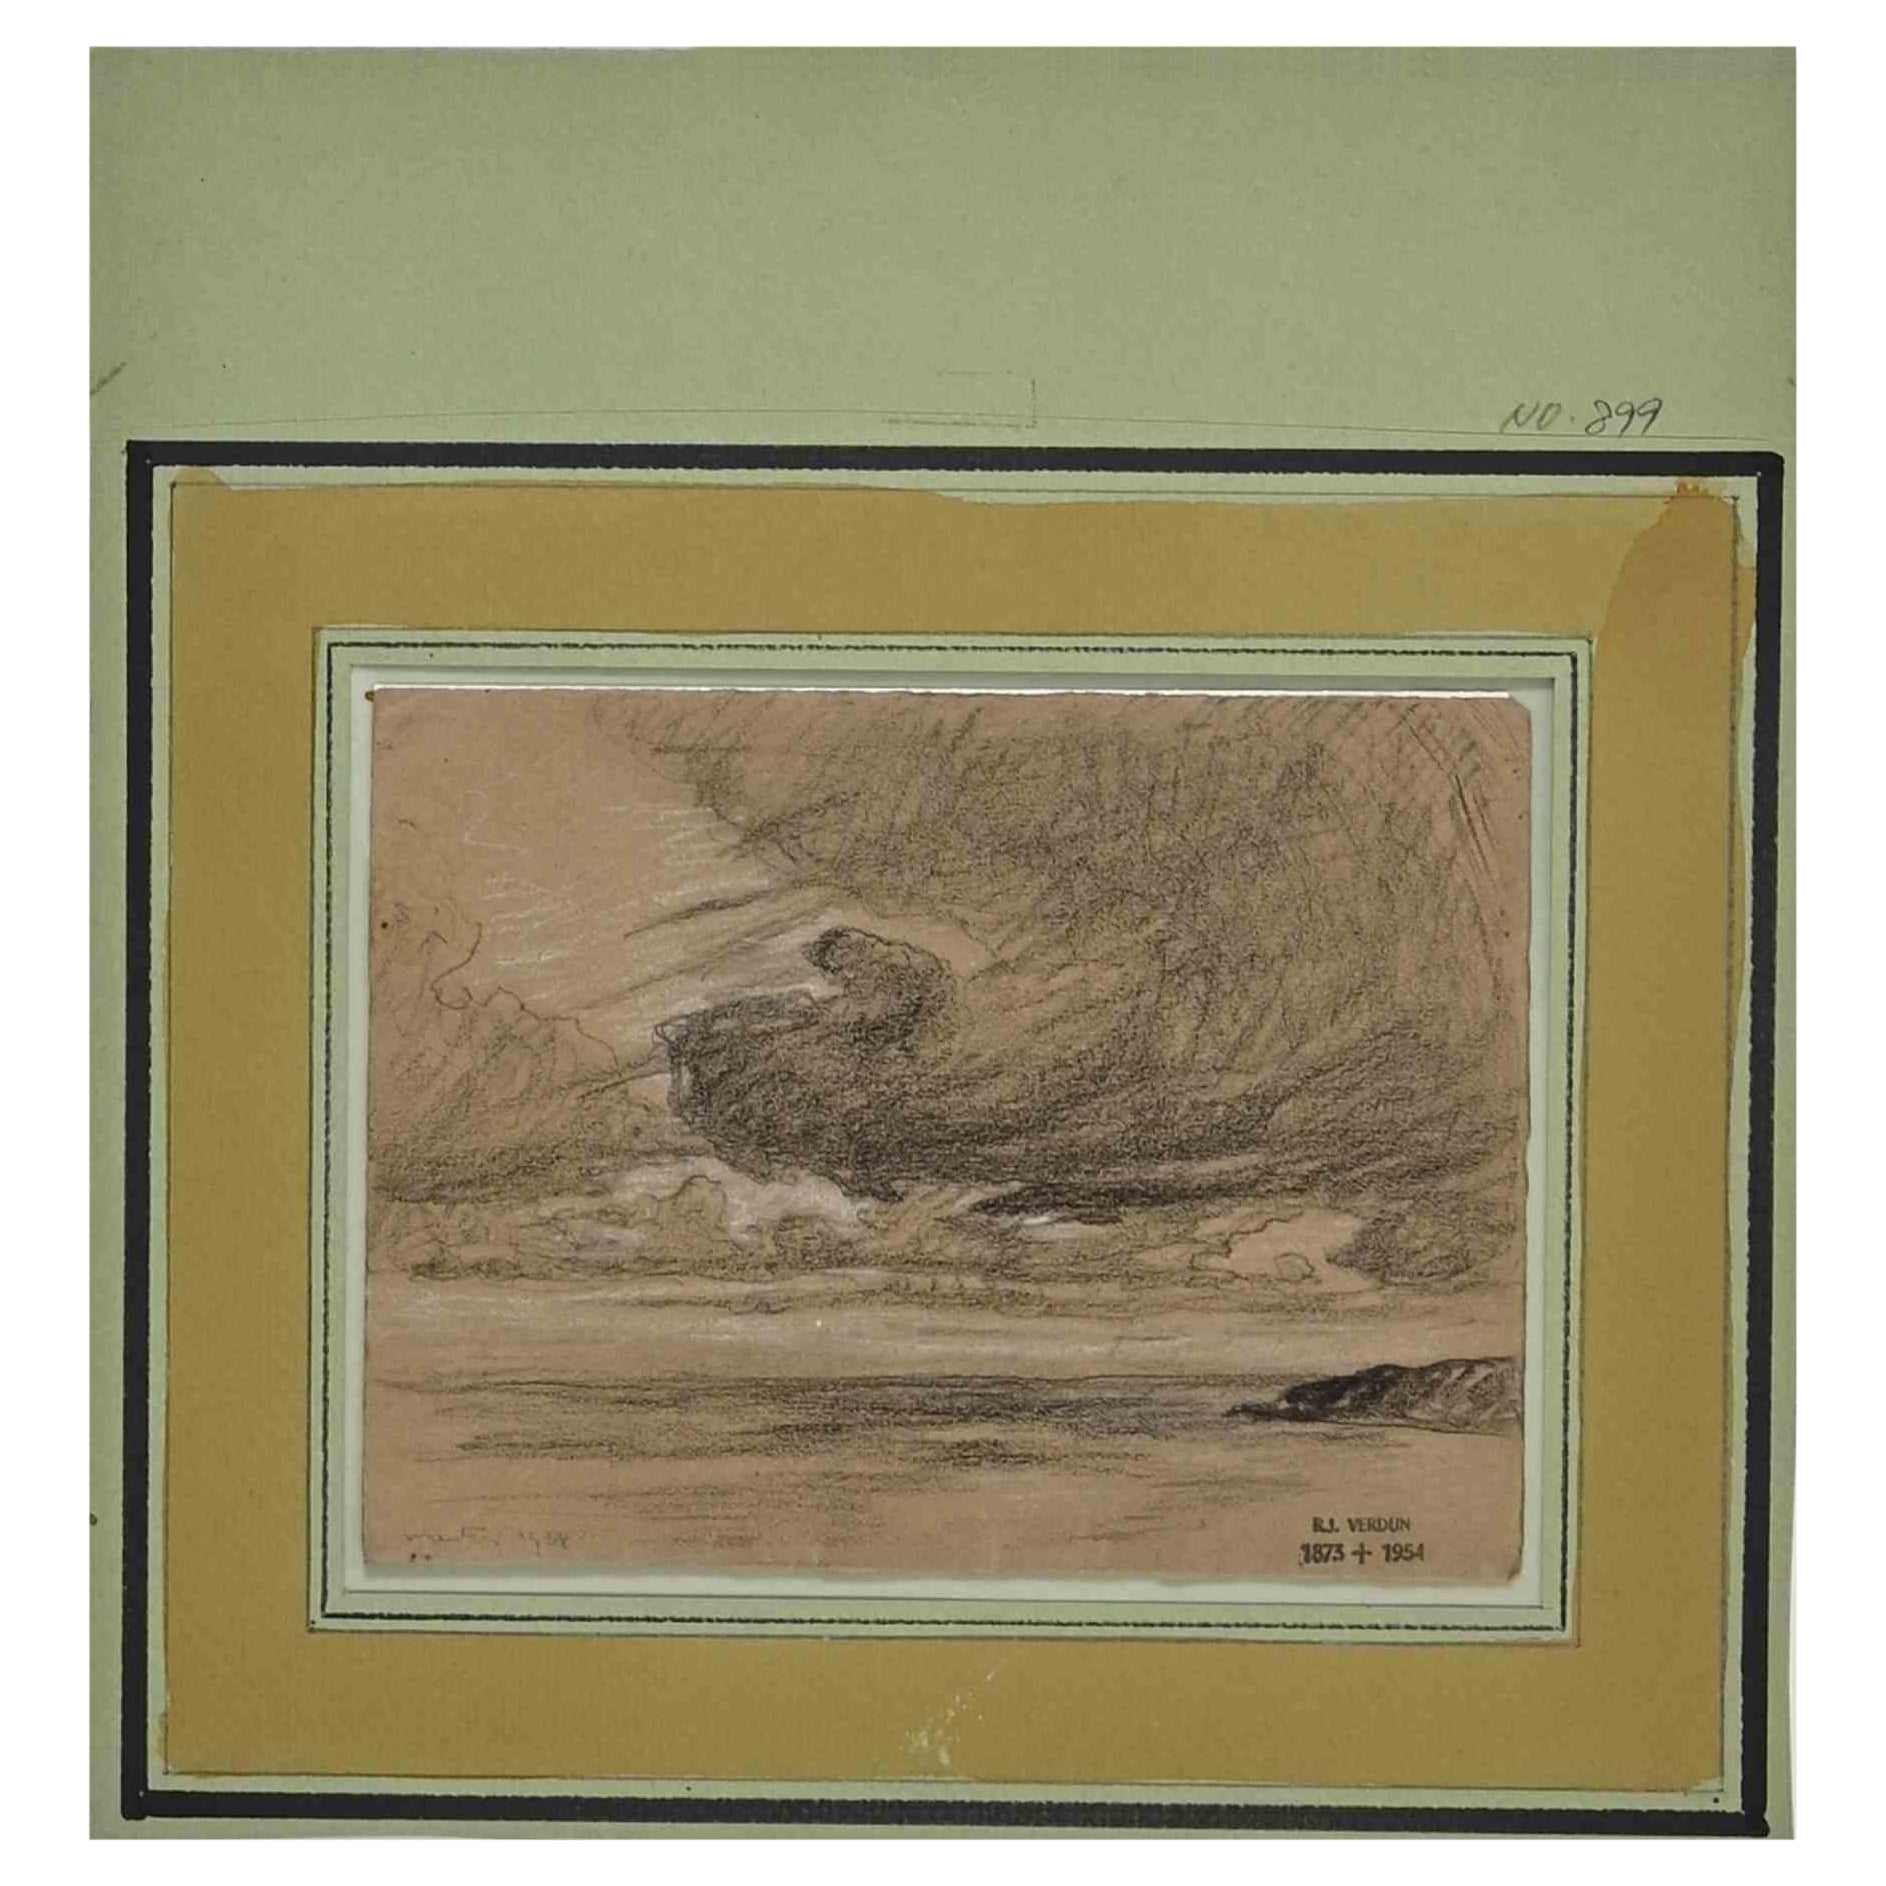 Nuageux est un dessin original au crayon réalisé par Raymond Jean Verdun (1873 - 1954) en 1908.

Signé et daté par l'artiste.

Bon état.

Né en 1873 à Nogent-le-Rotrou, Raymond Jean Verdun a été l'élève d'Henri Harpignies. Comme Harpignies, il peint